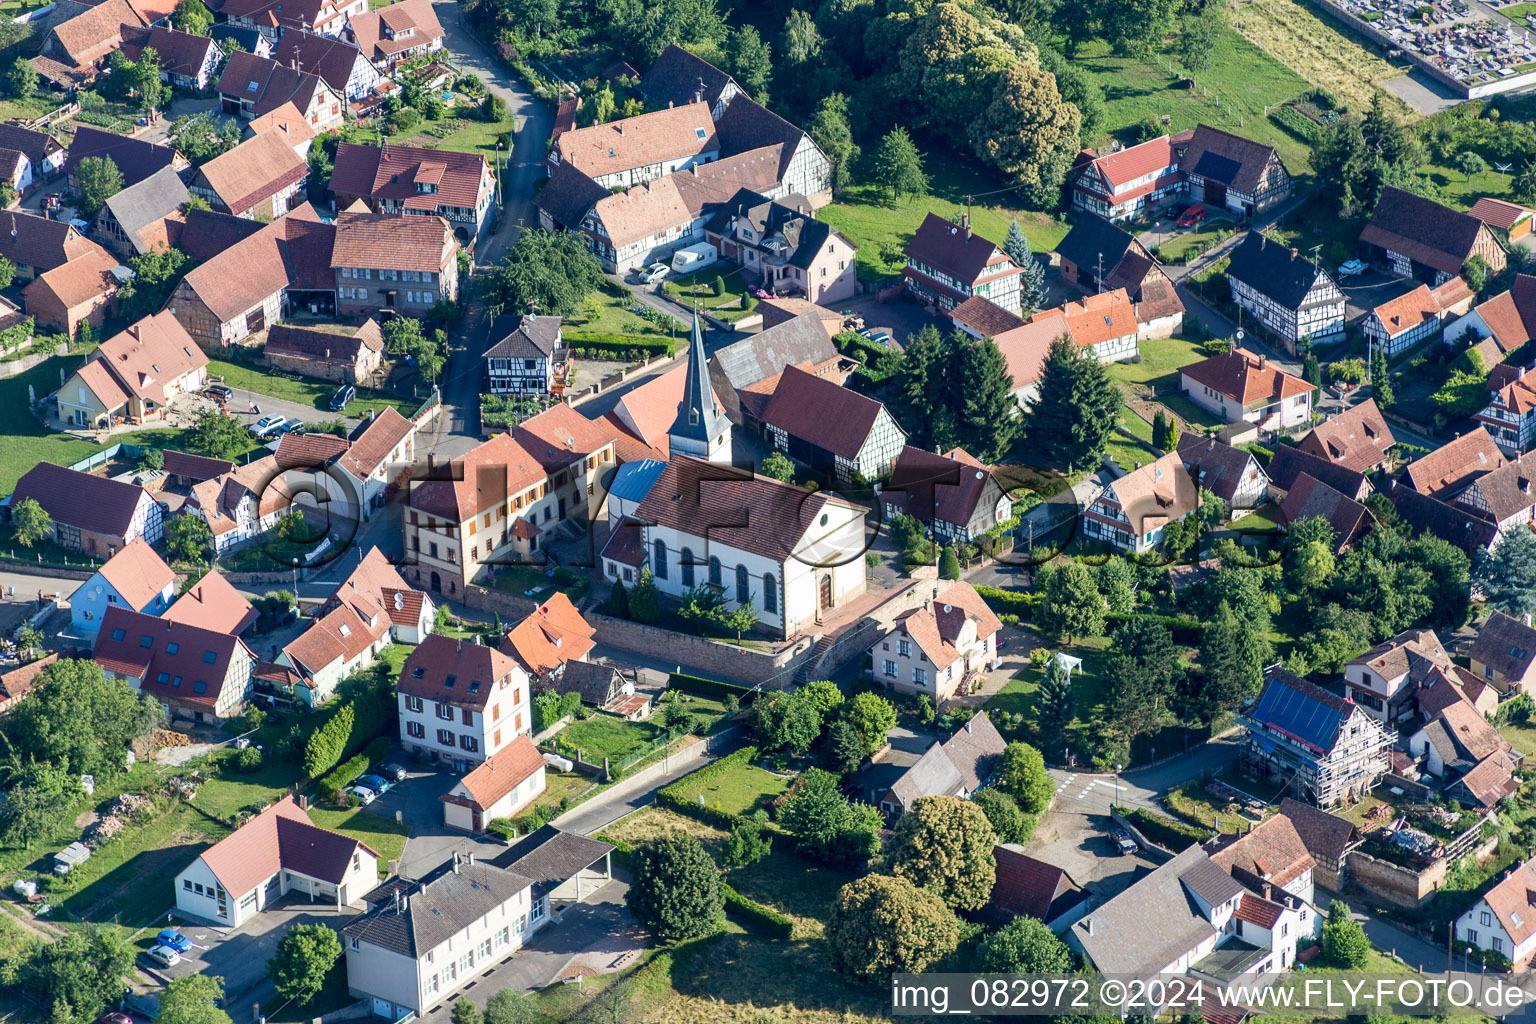 Vue aérienne de Bâtiment d'église au centre du village à Lampertsloch dans le département Bas Rhin, France